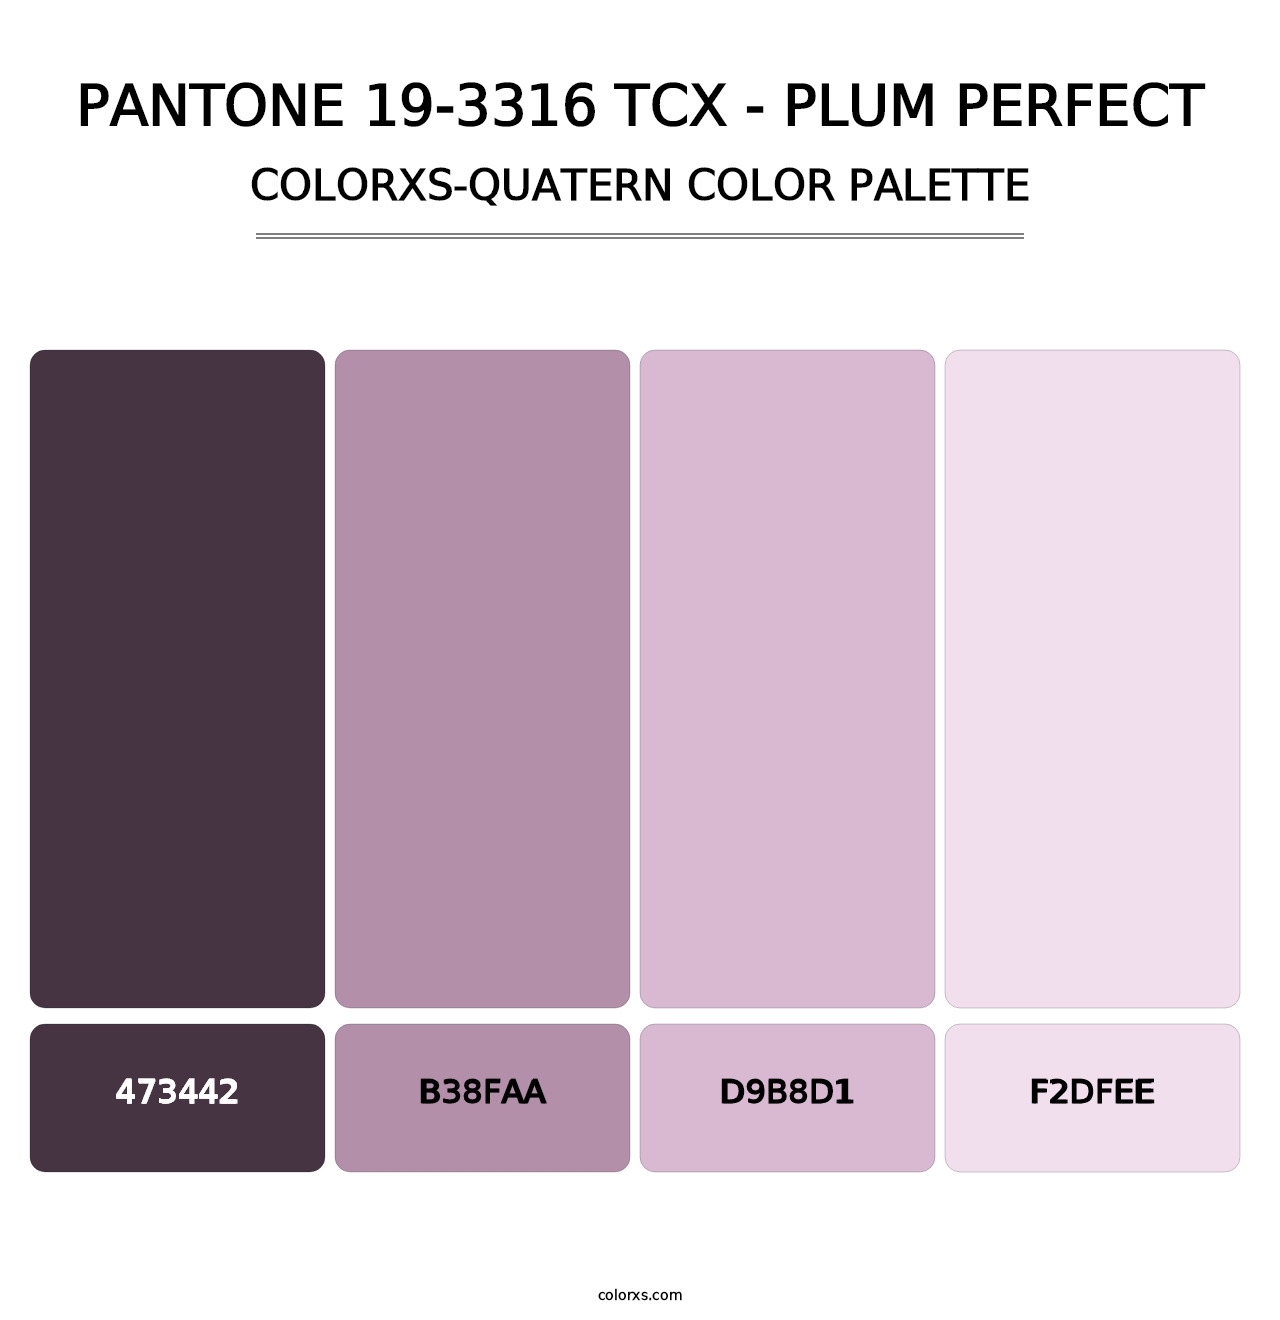 PANTONE 19-3316 TCX - Plum Perfect - Colorxs Quatern Palette